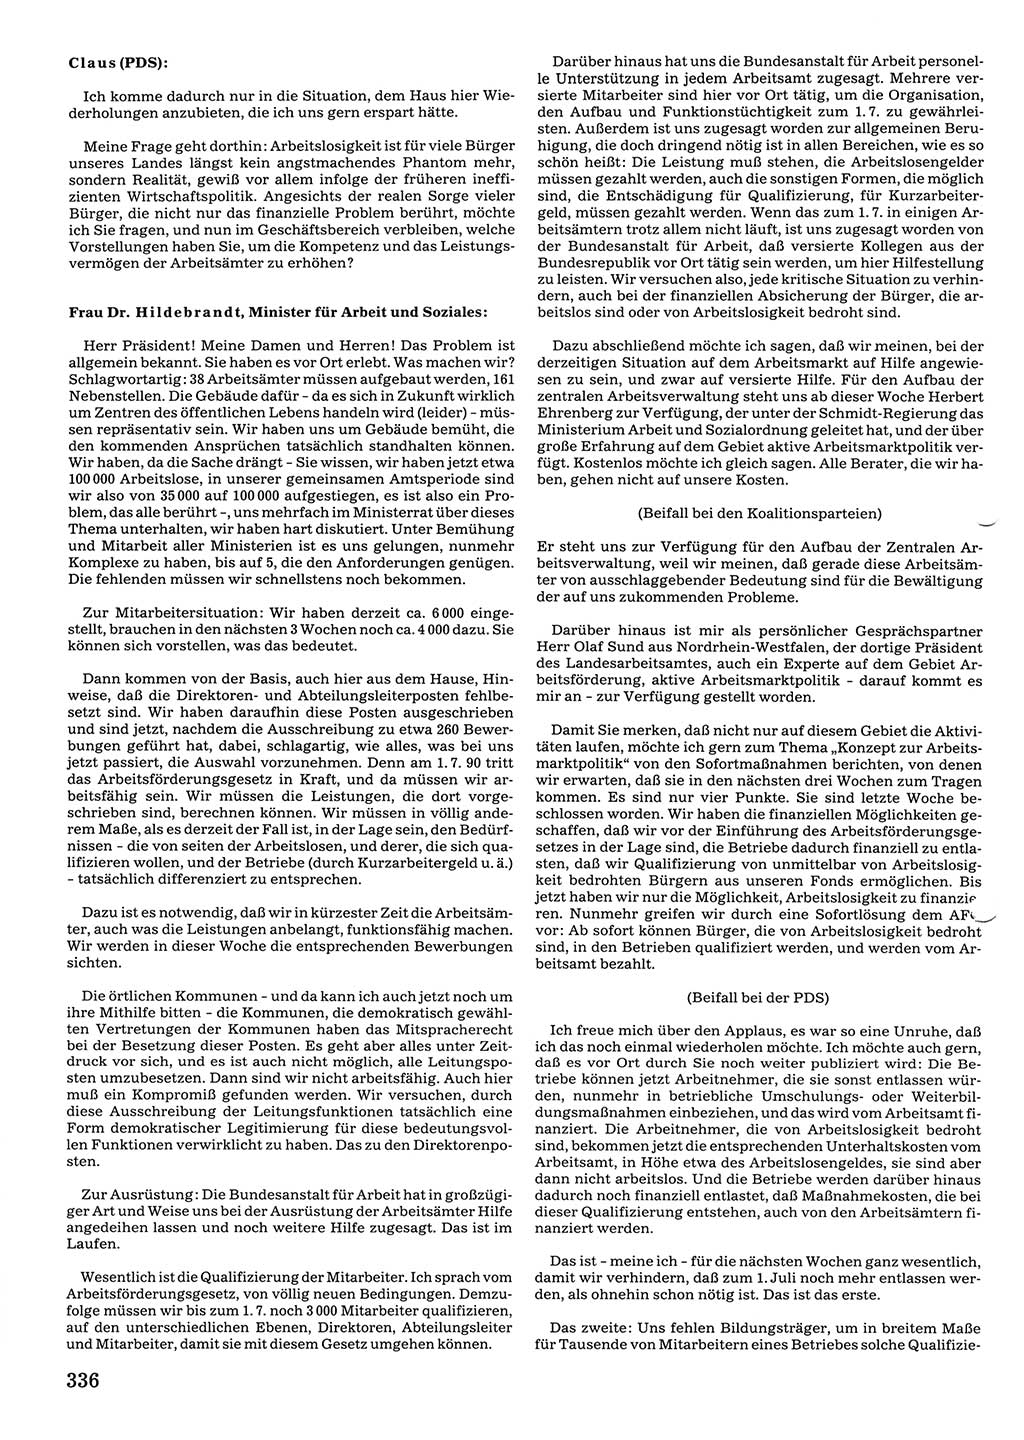 Tagungen der Volkskammer (VK) der Deutschen Demokratischen Republik (DDR), 10. Wahlperiode 1990, Seite 336 (VK. DDR 10. WP. 1990, Prot. Tg. 1-38, 5.4.-2.10.1990, S. 336)